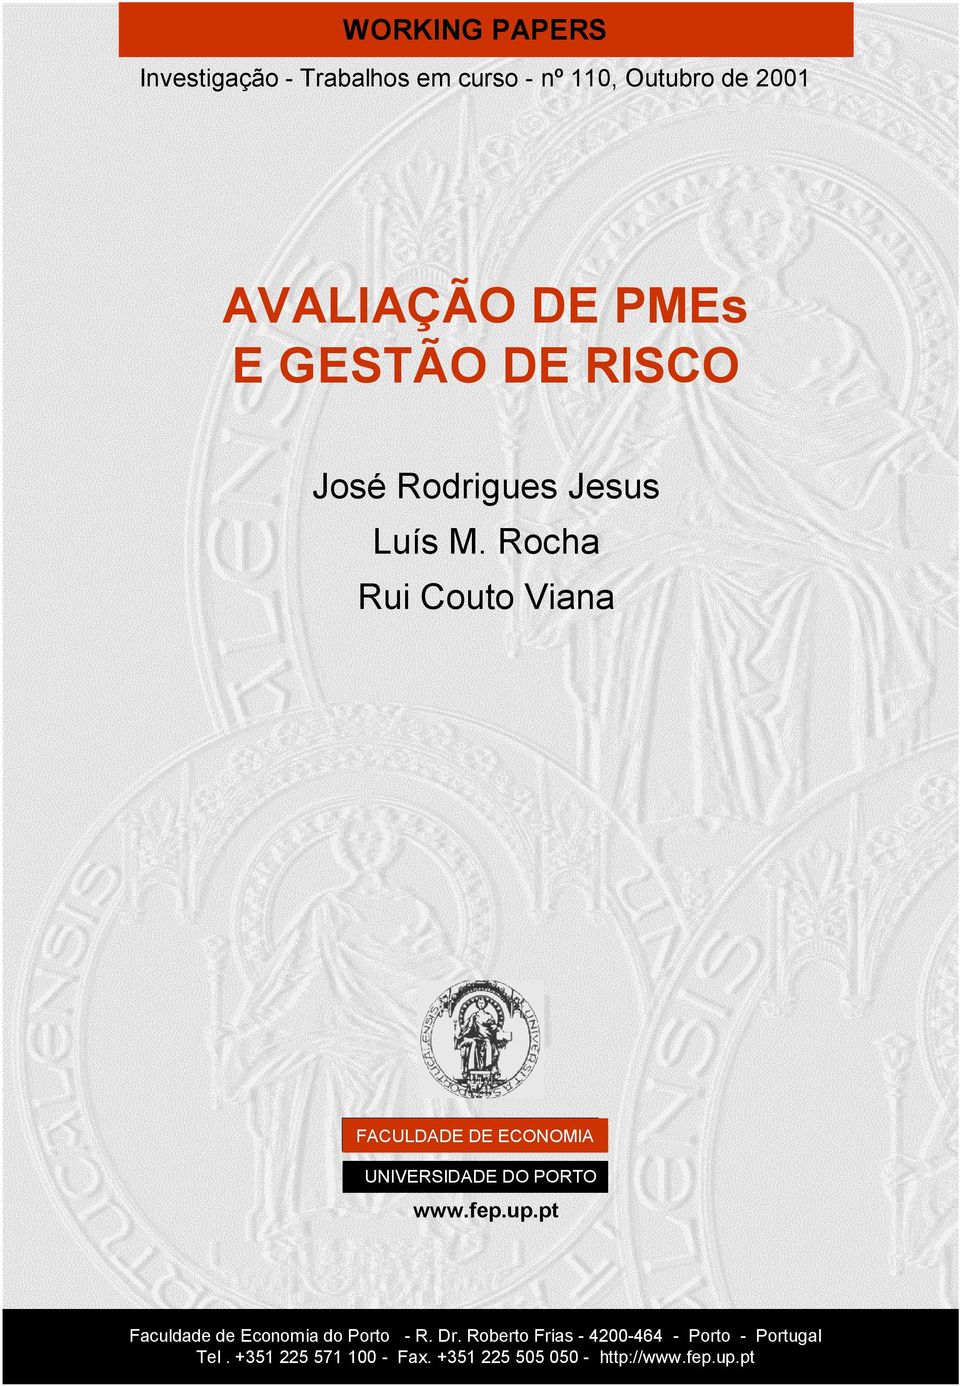 Rocha Rui Couto Viana FACULDADE DE ECONOMIA UNIVERSIDADE DO PORTO www.fep.up.